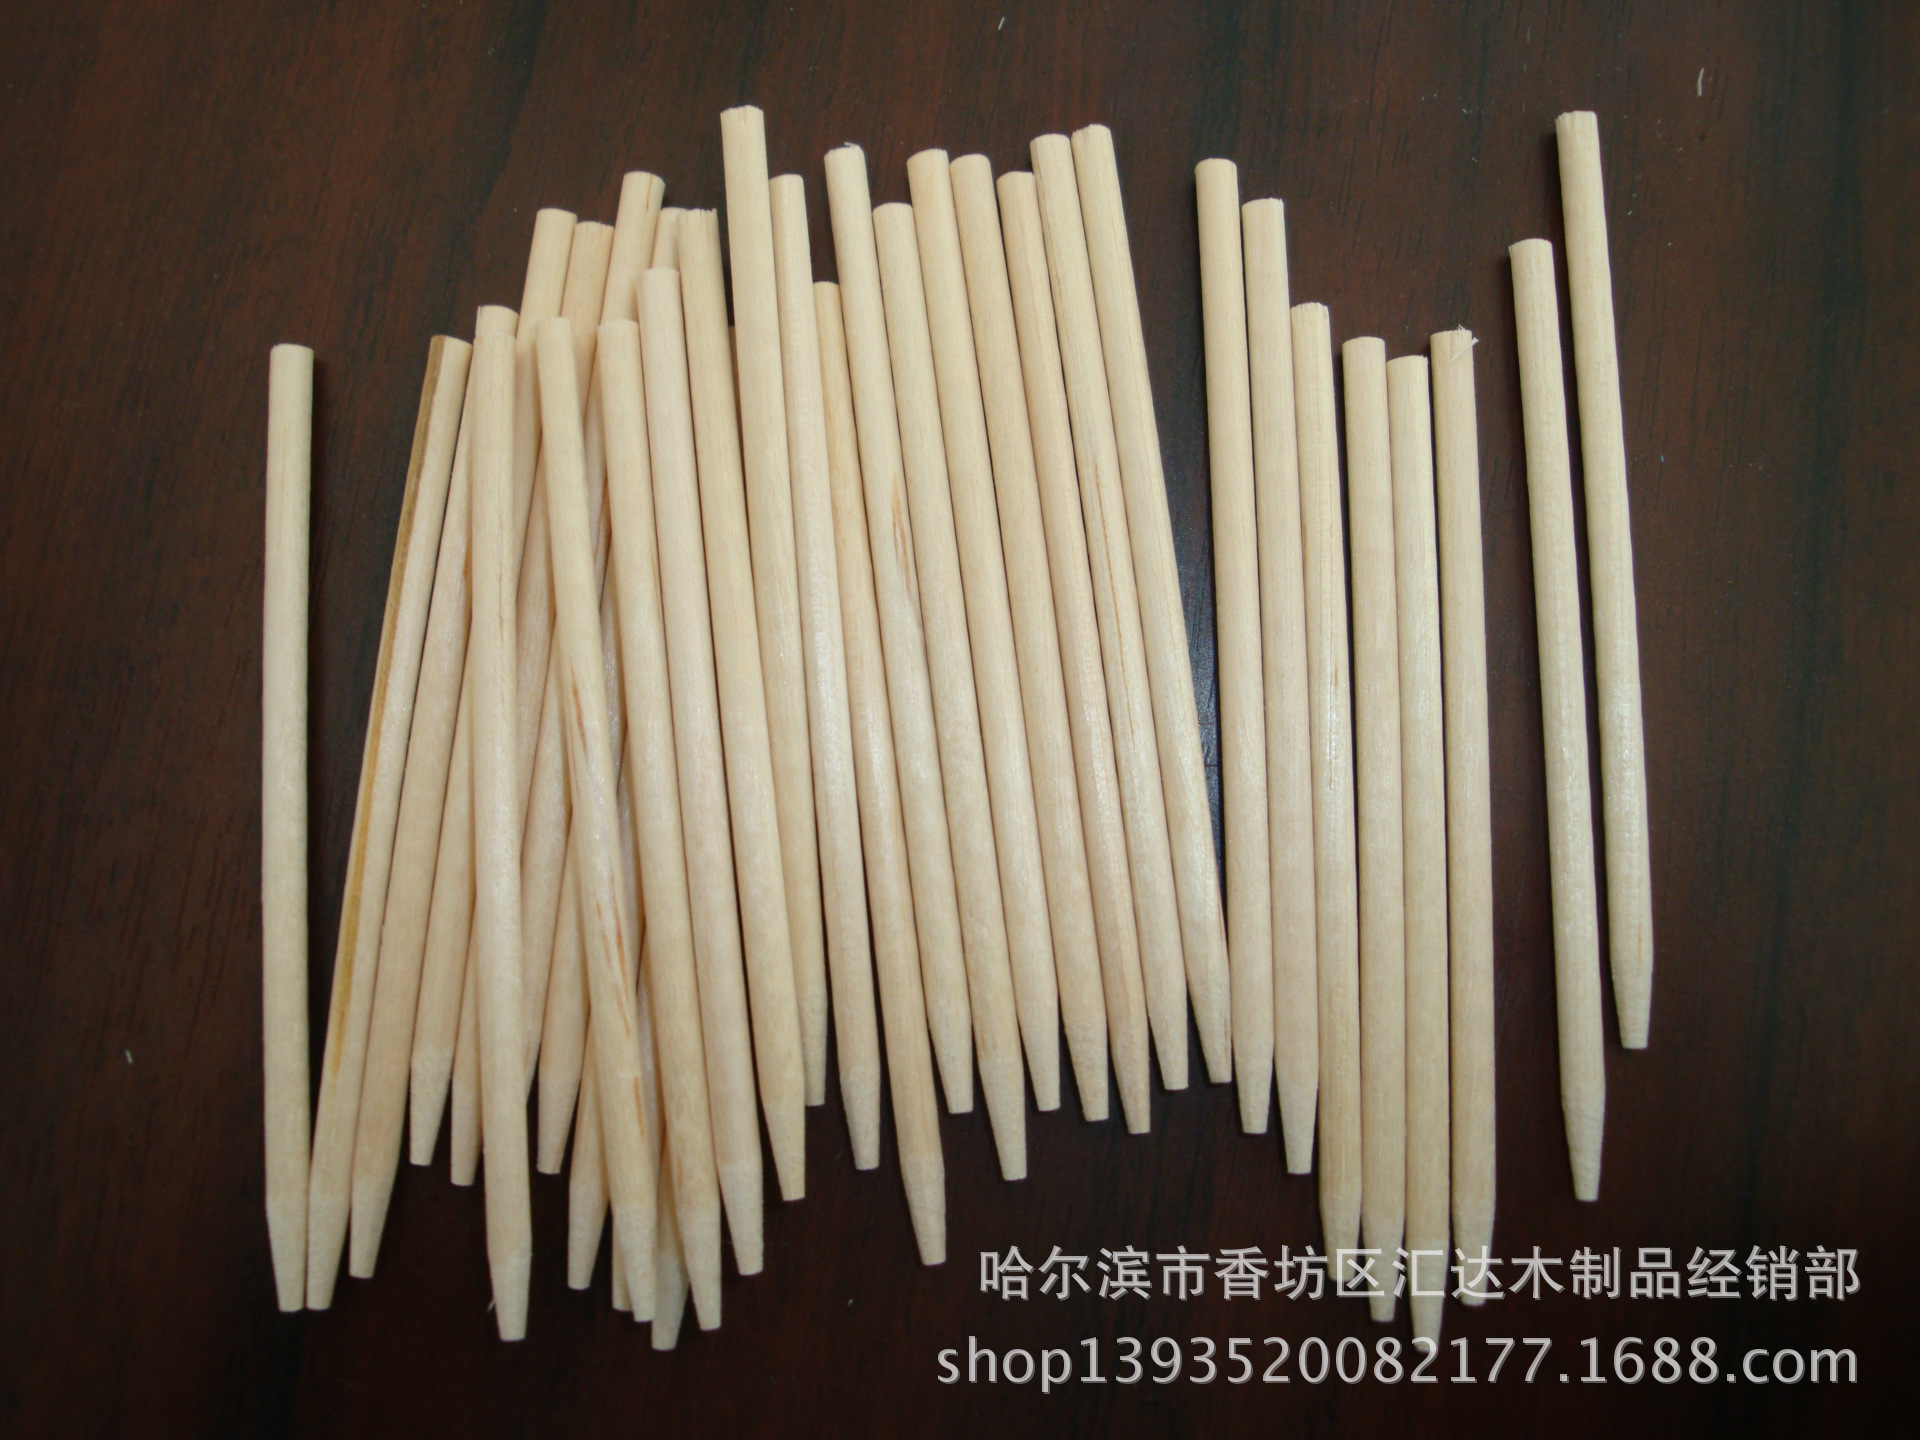 厂家供应棒糖棒 木质棒糖棒 环保磨尖棒糖棒 一次性棒糖棒示例图2